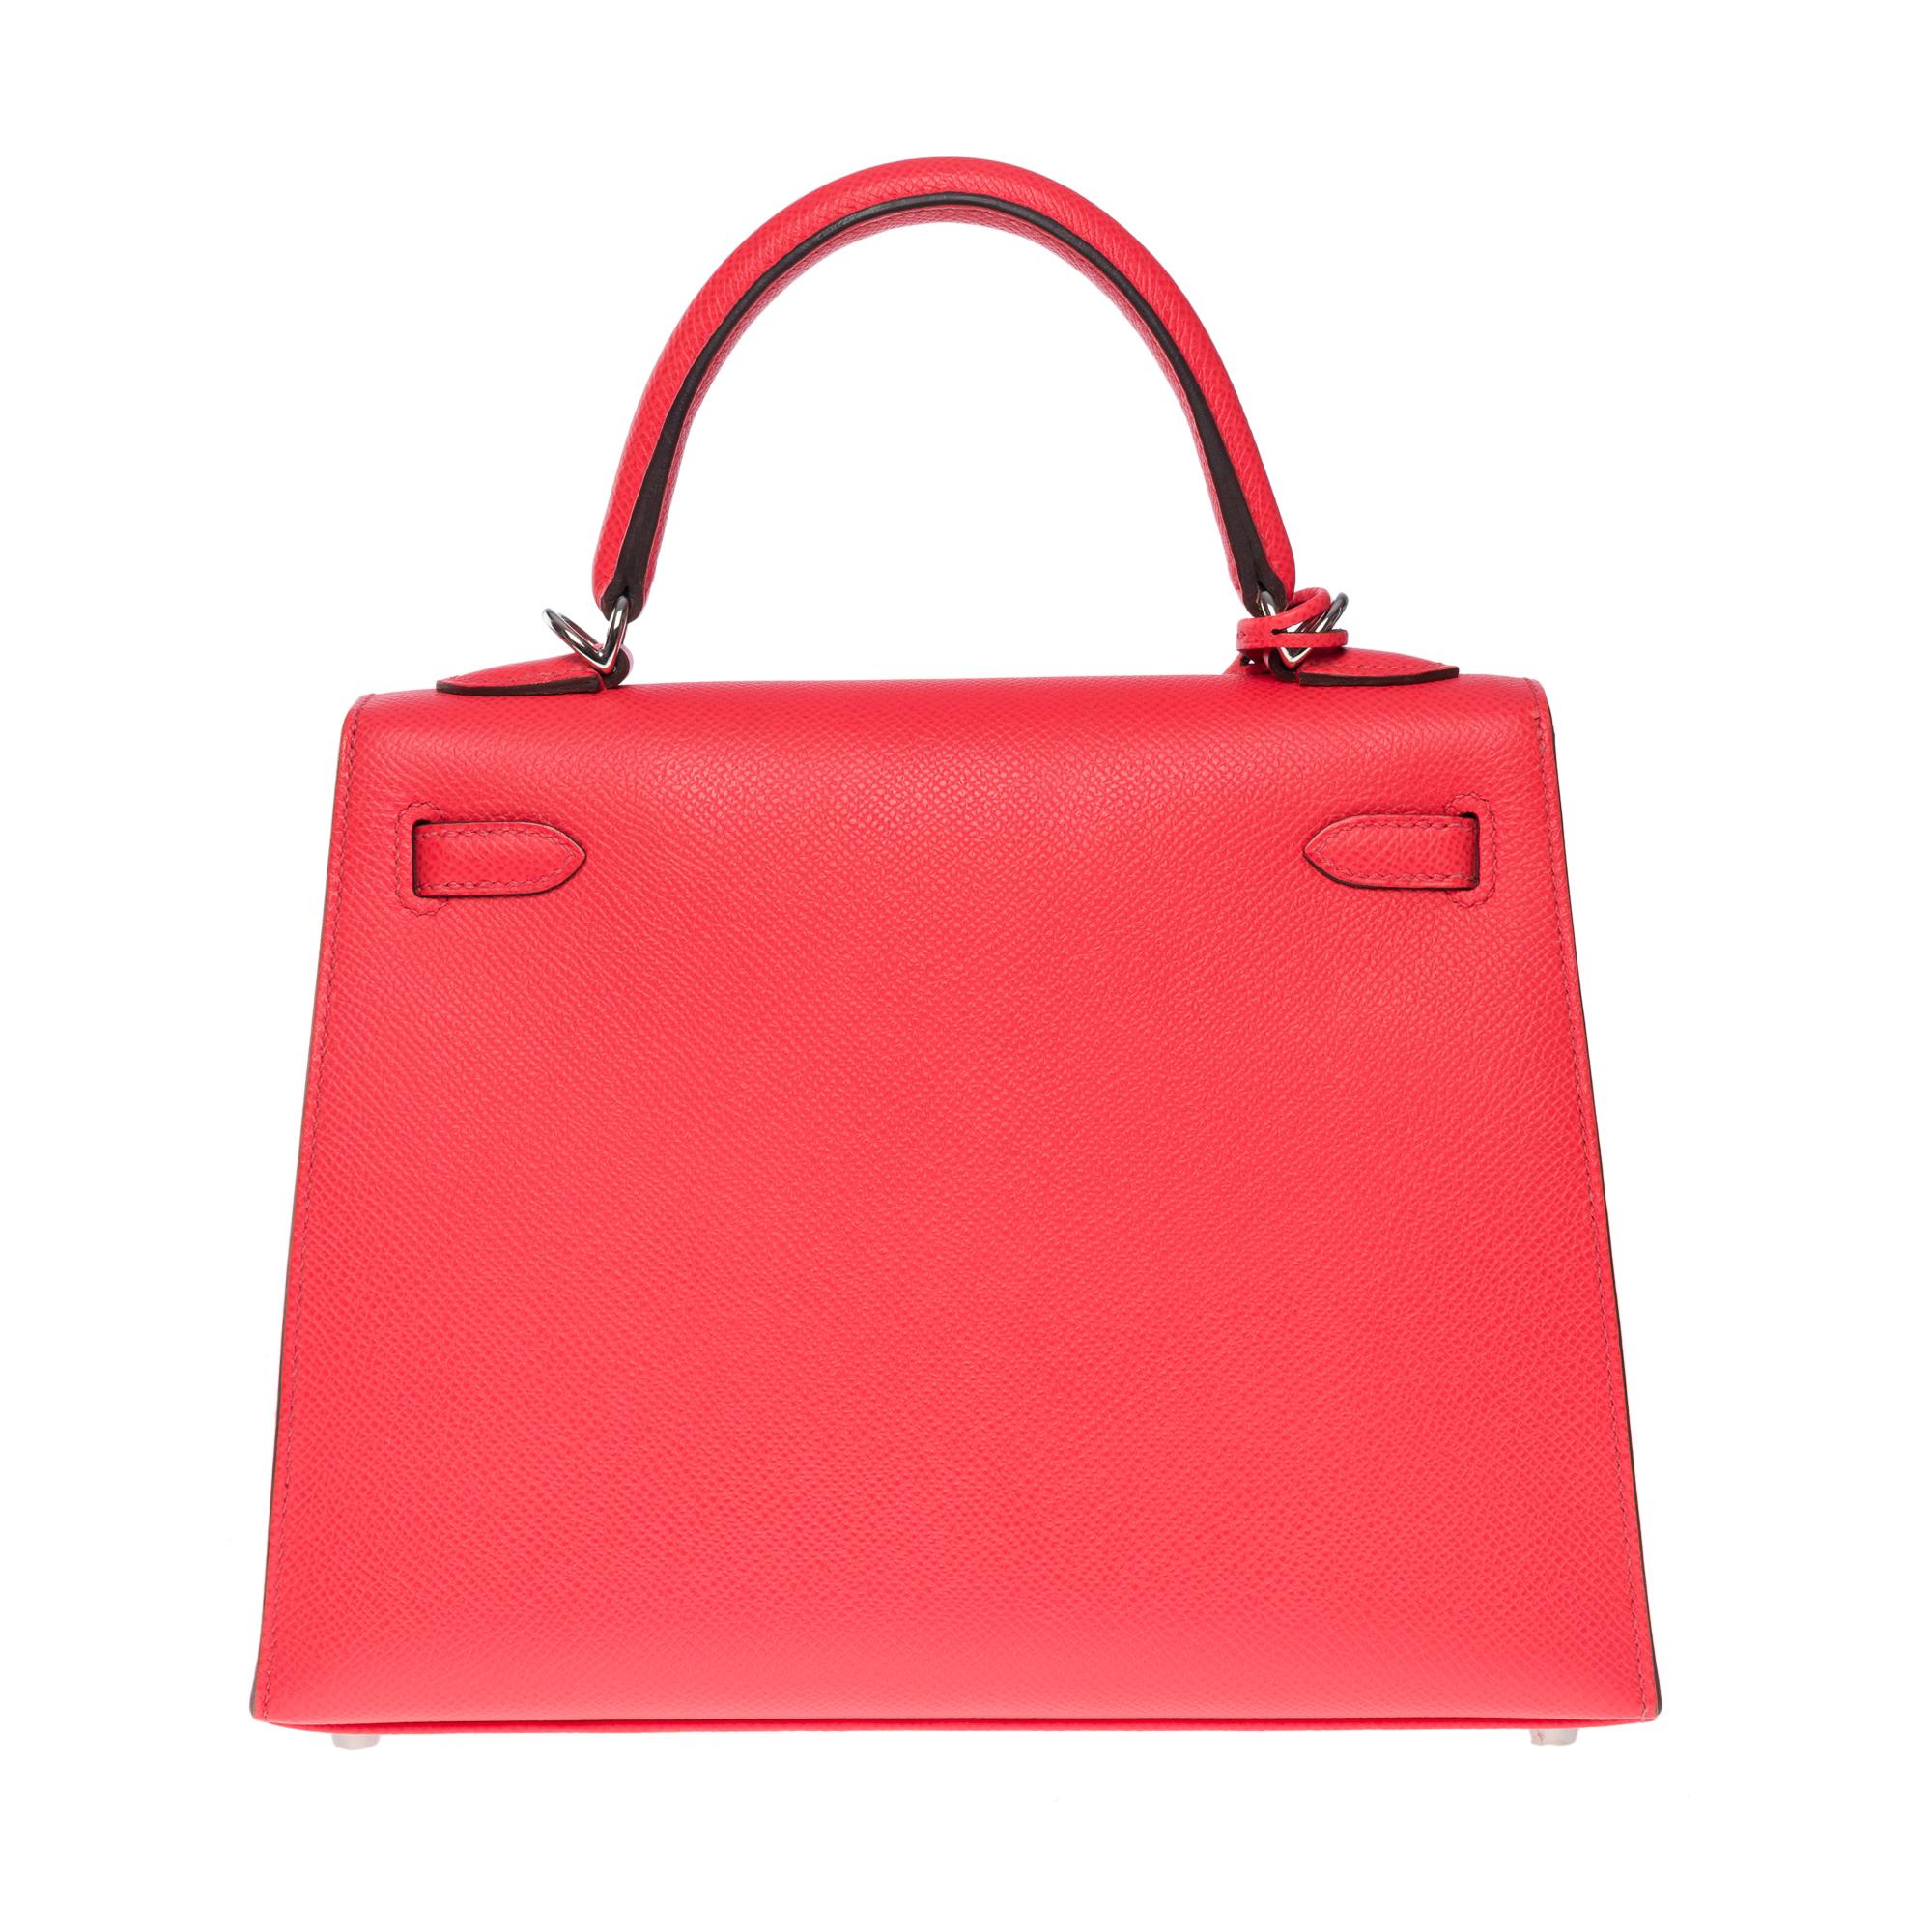 New Amazing Hermès Kelly 25 handbag strap in Pink Texas epsom leather, SHW Neuf - En vente à Paris, IDF